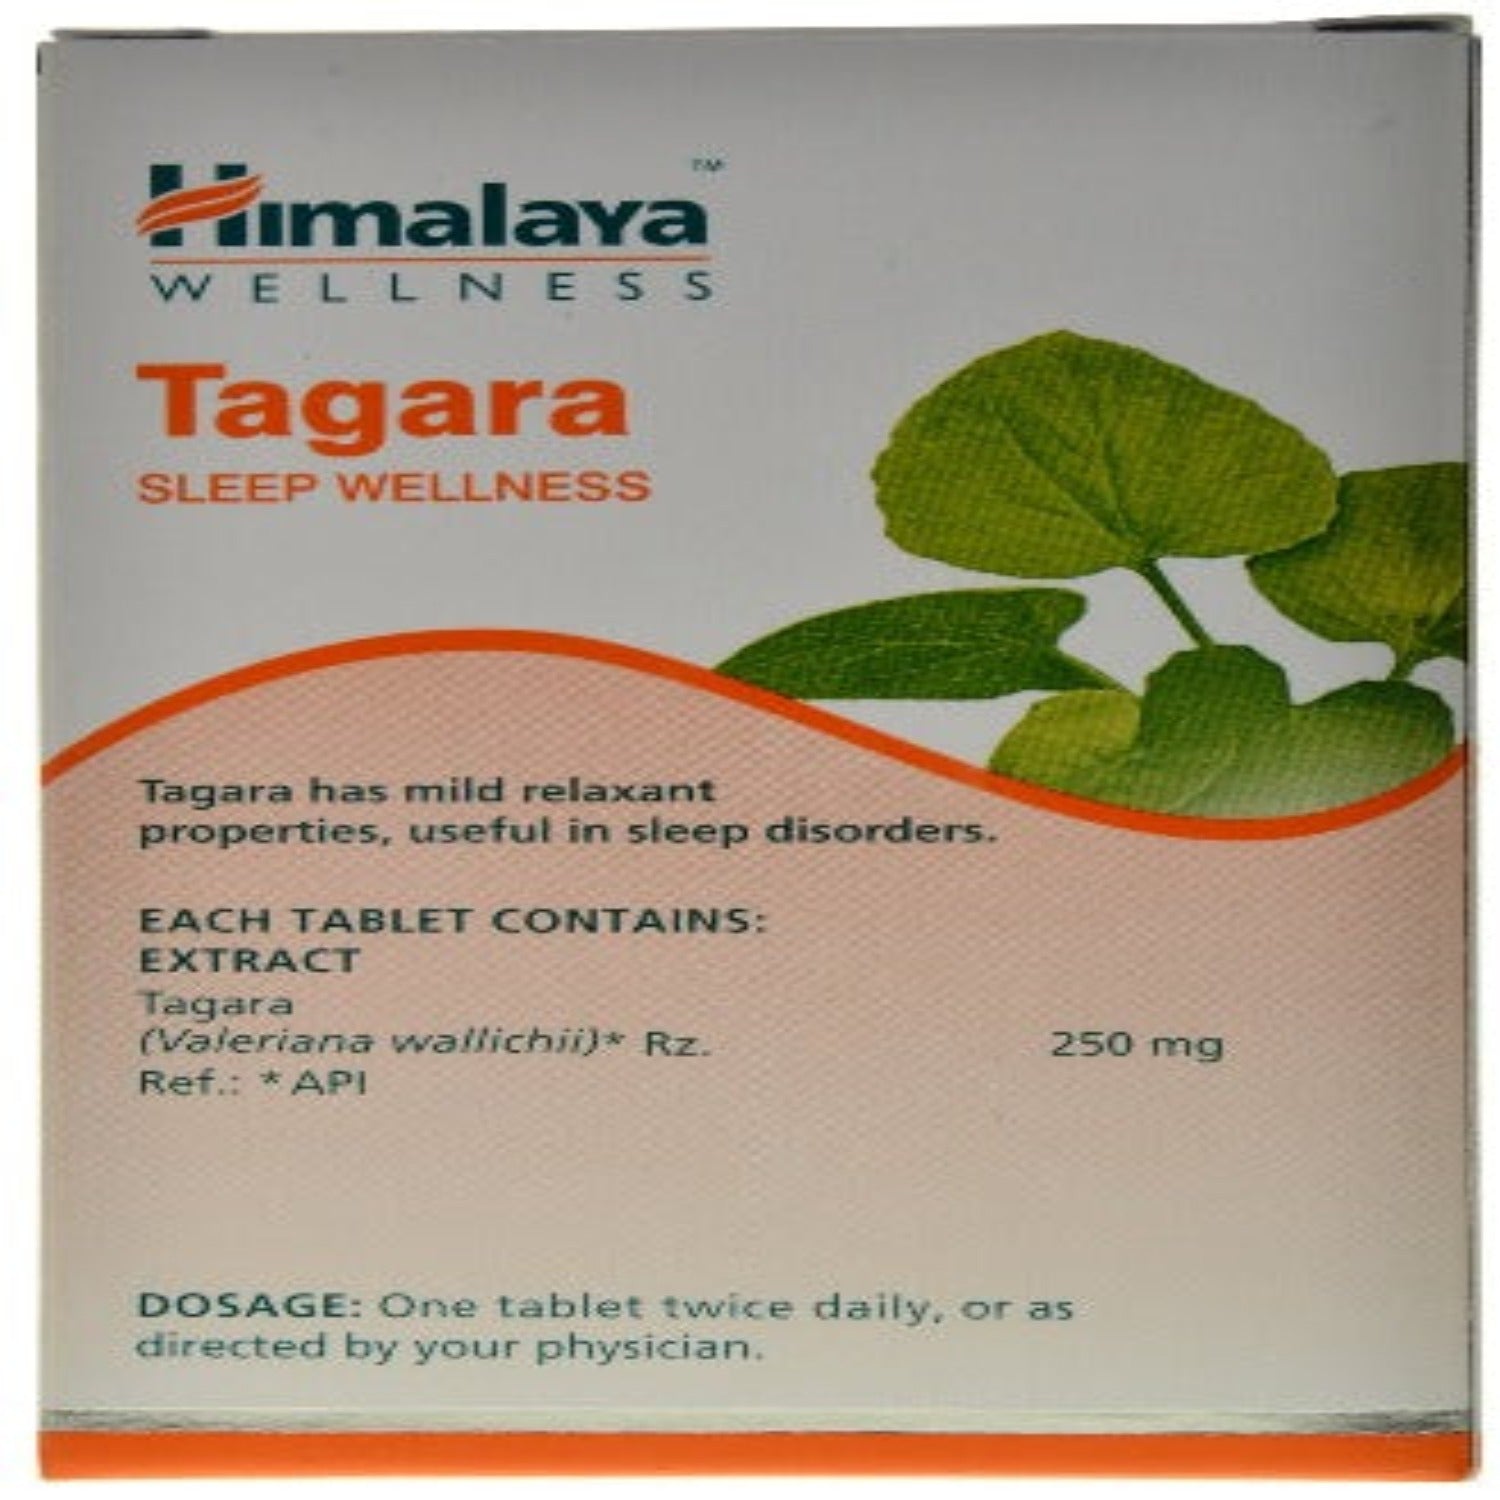 Himalaya Pure Herbs Sleep Wellness Herbal Ayurvedic Tagara Promotes Restful Sleep 60 Tablets